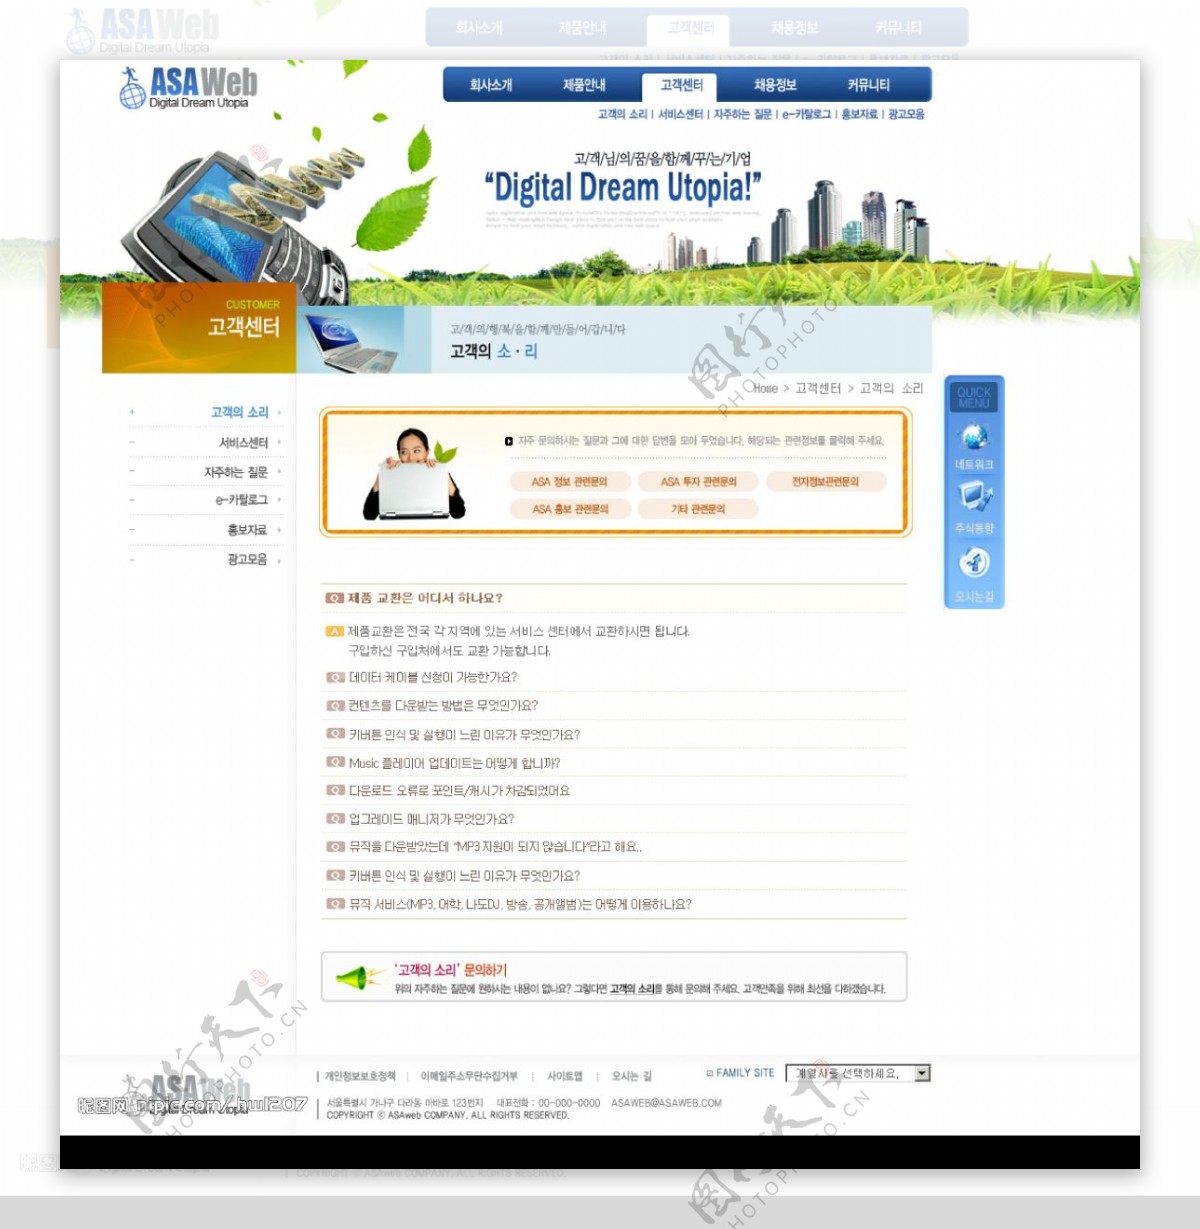 韩国网站系列之二级页面图片